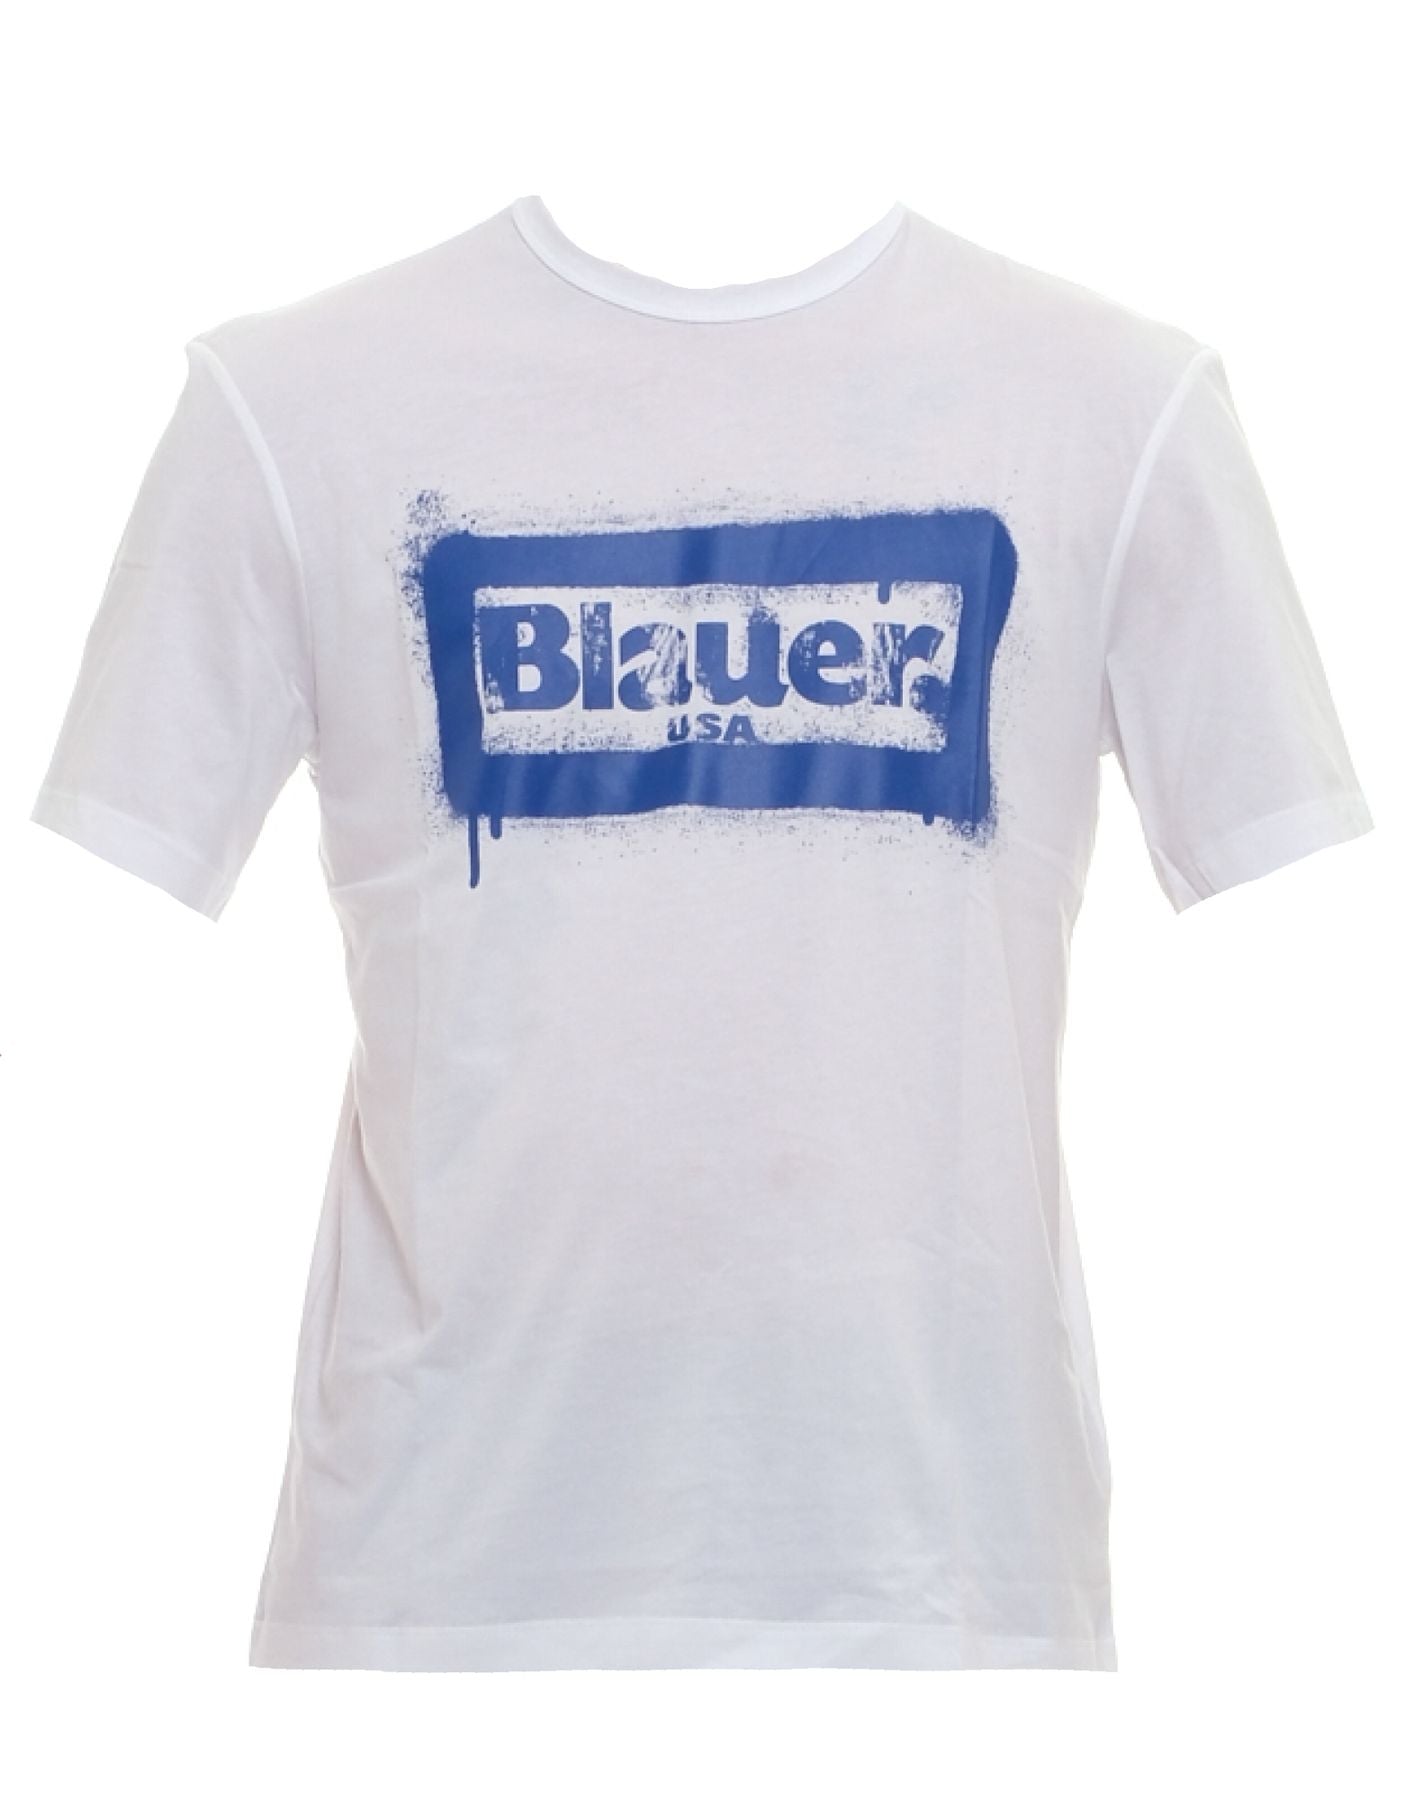 Camiseta para el hombre 24SBLUH02147 004547 100 Blauer